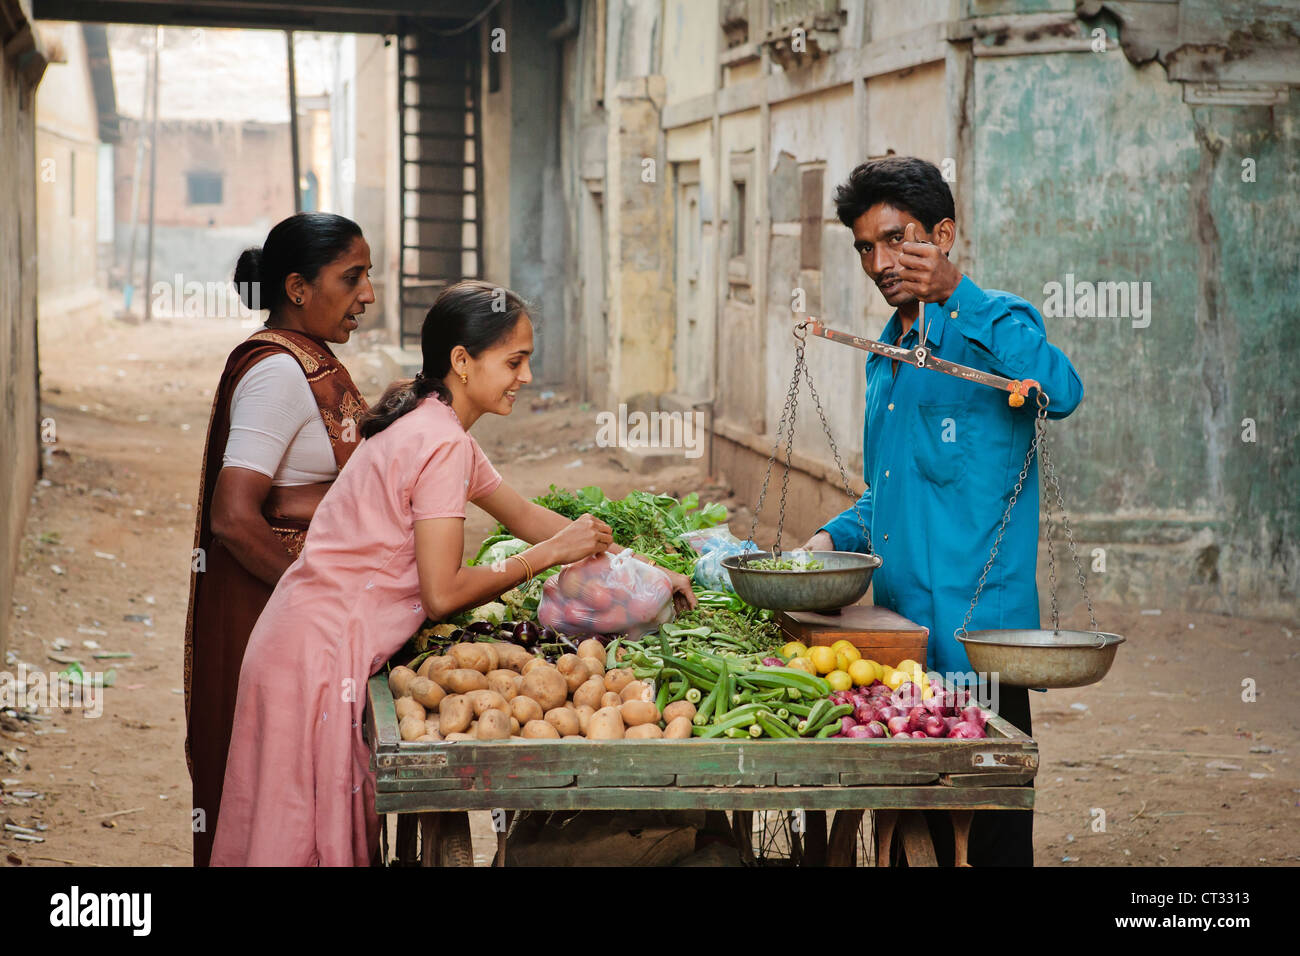 Local vegetable seller going door to door selling fresh produce, Gujarat, India Stock Photo